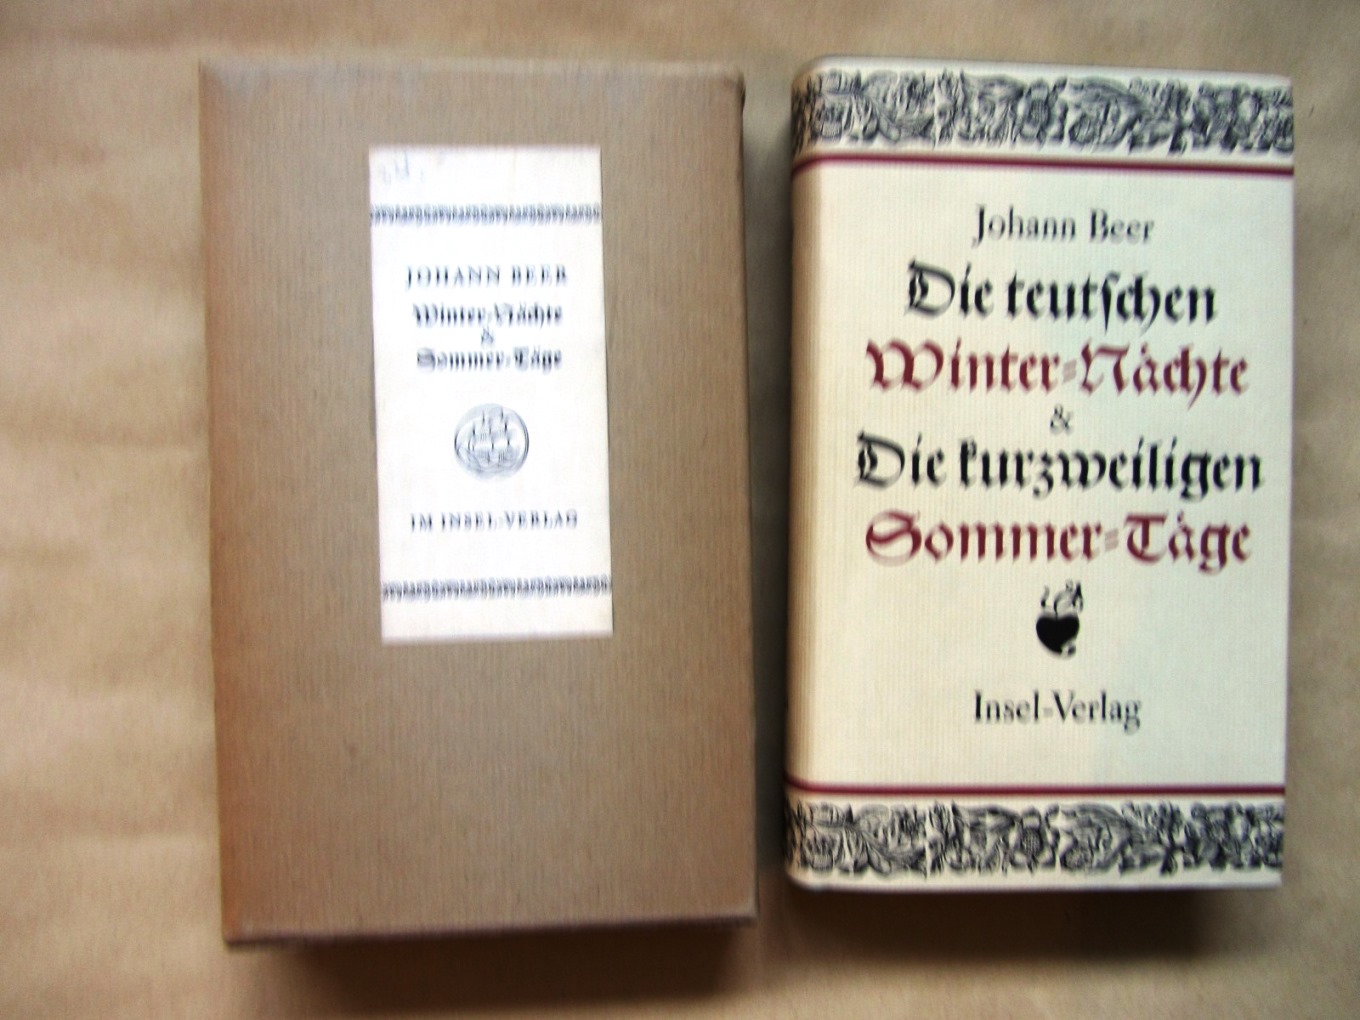 Beer, Johann:  Die teutschen Winter-Nächte & Die kurzweiligen Sommer-Täge. Vollständige Ausgabe. Hrsg. und mit Nachwort versehen von Richard Alewyn. 